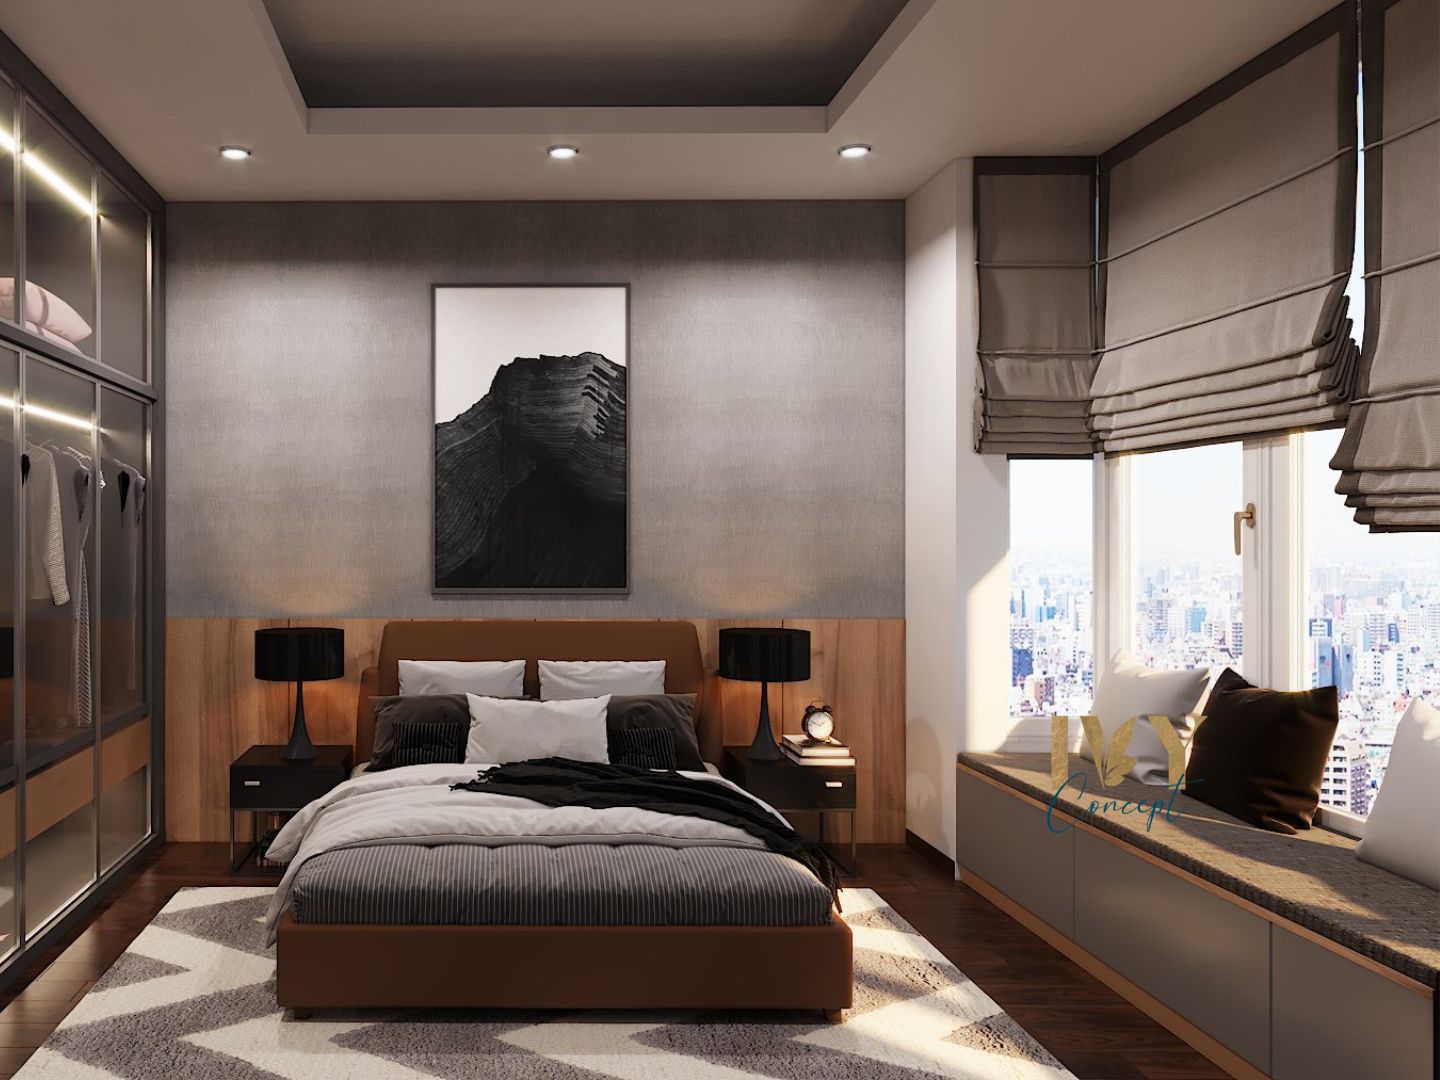 Phòng ngủ, phong cách Hiện đại Modern, thiết kế concept nội thất, nhà phố Quận 7